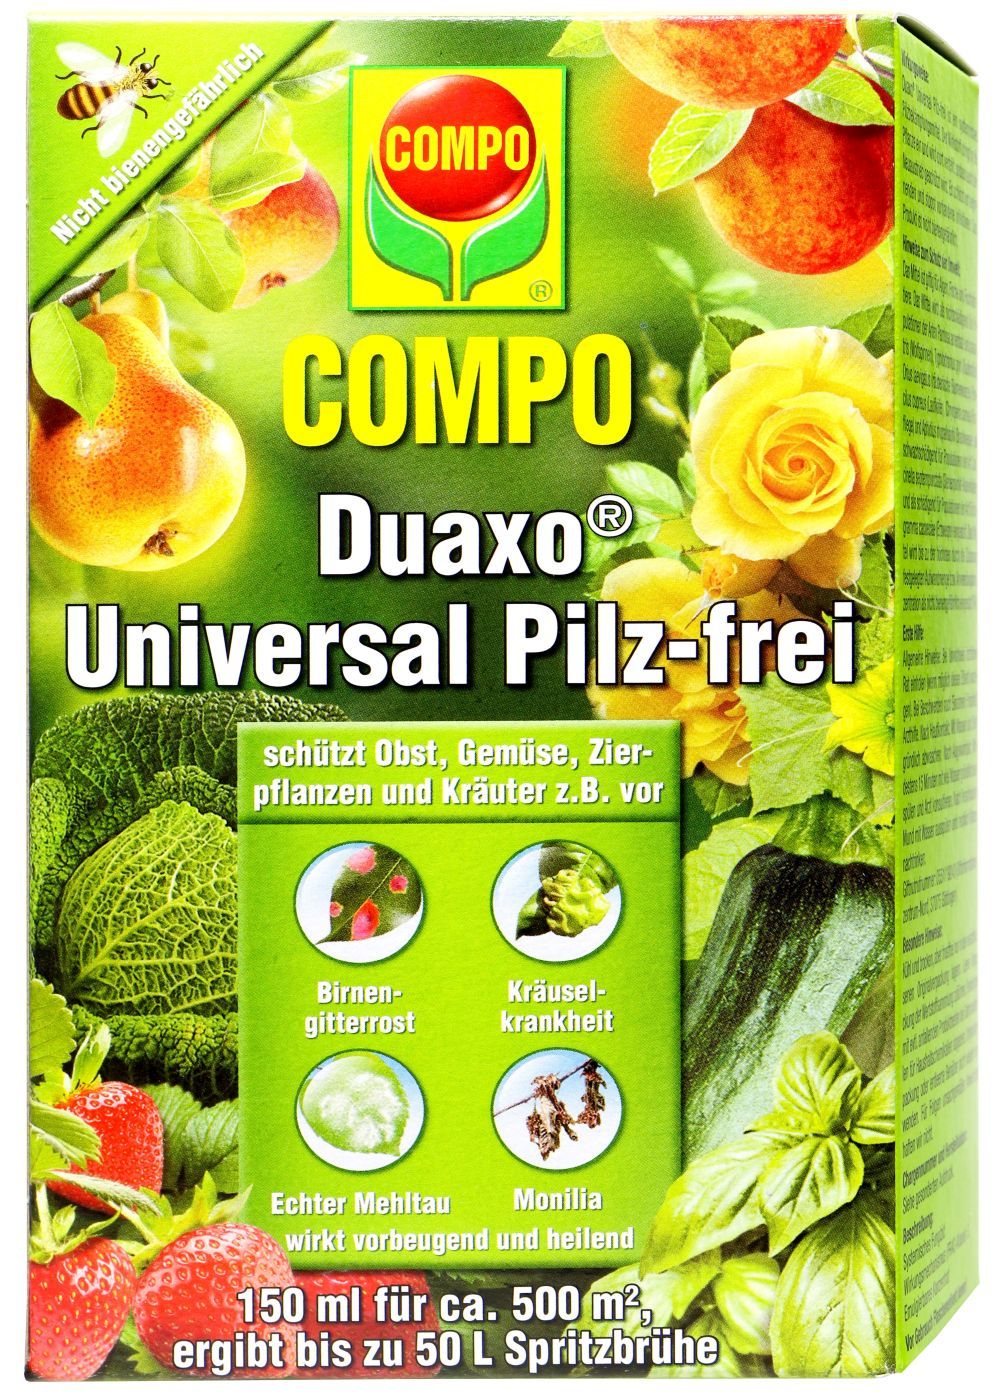 Compo Duaxo Universal Pilz-frei - 150 ml